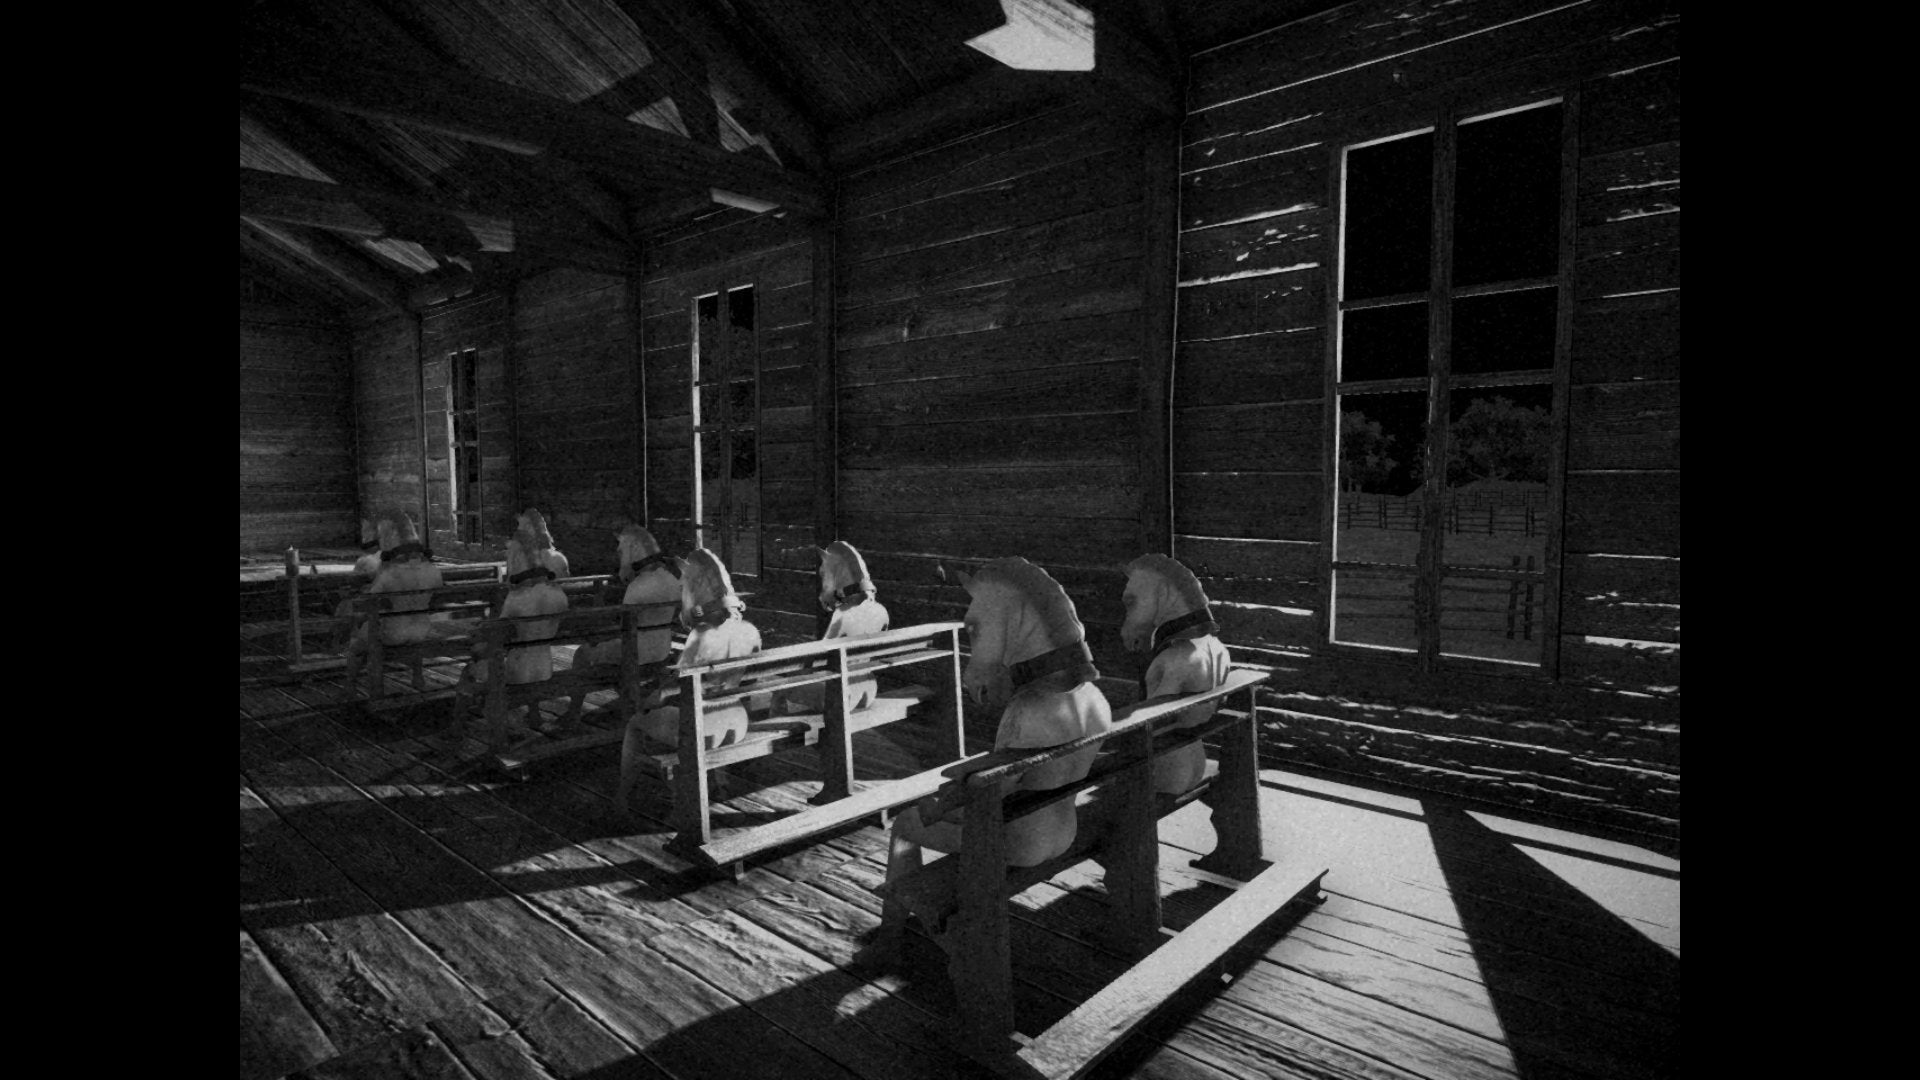 Un'immagine in bianco e nero e granulosa che sembra raffigurare l'interno di una chiesa di legno, con file di piccoli banchi su cui sono sedute persone che indossano... teste di cavallo.